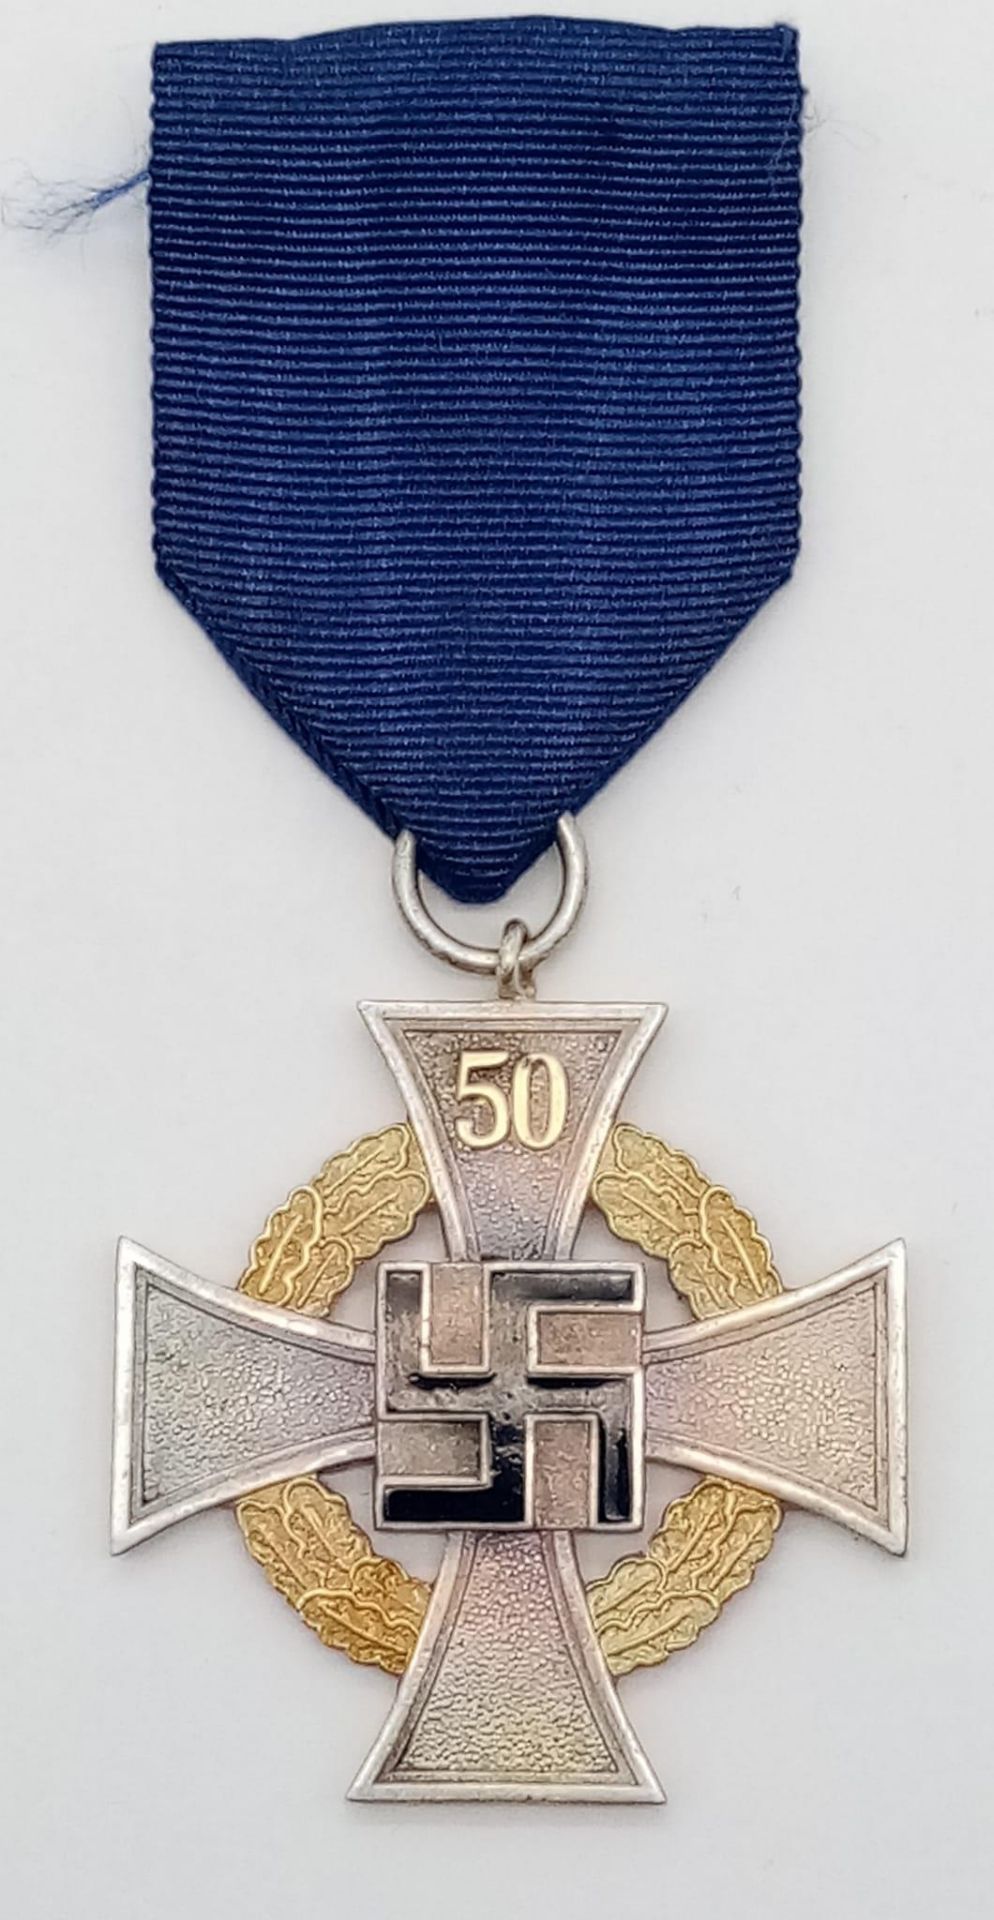 3rd Reich Civil Service 50 Year Medal “Für treue Arbeit” (“For Faithful Work”)